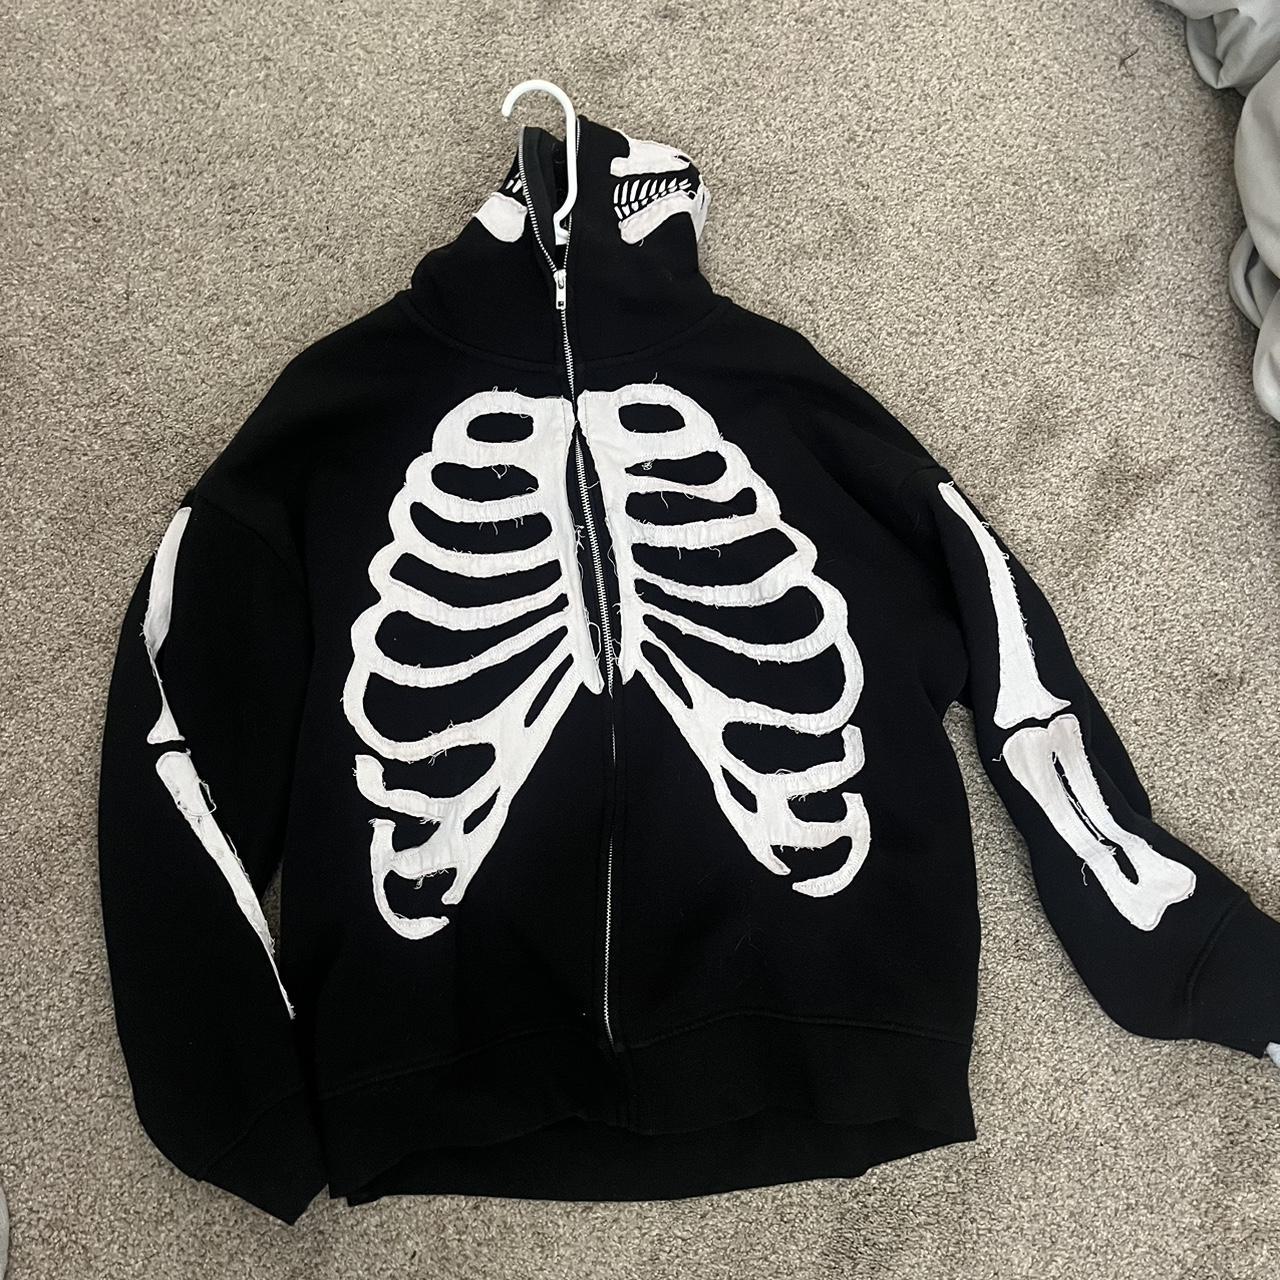 Skeleton hoodie that zips up all the way - Depop